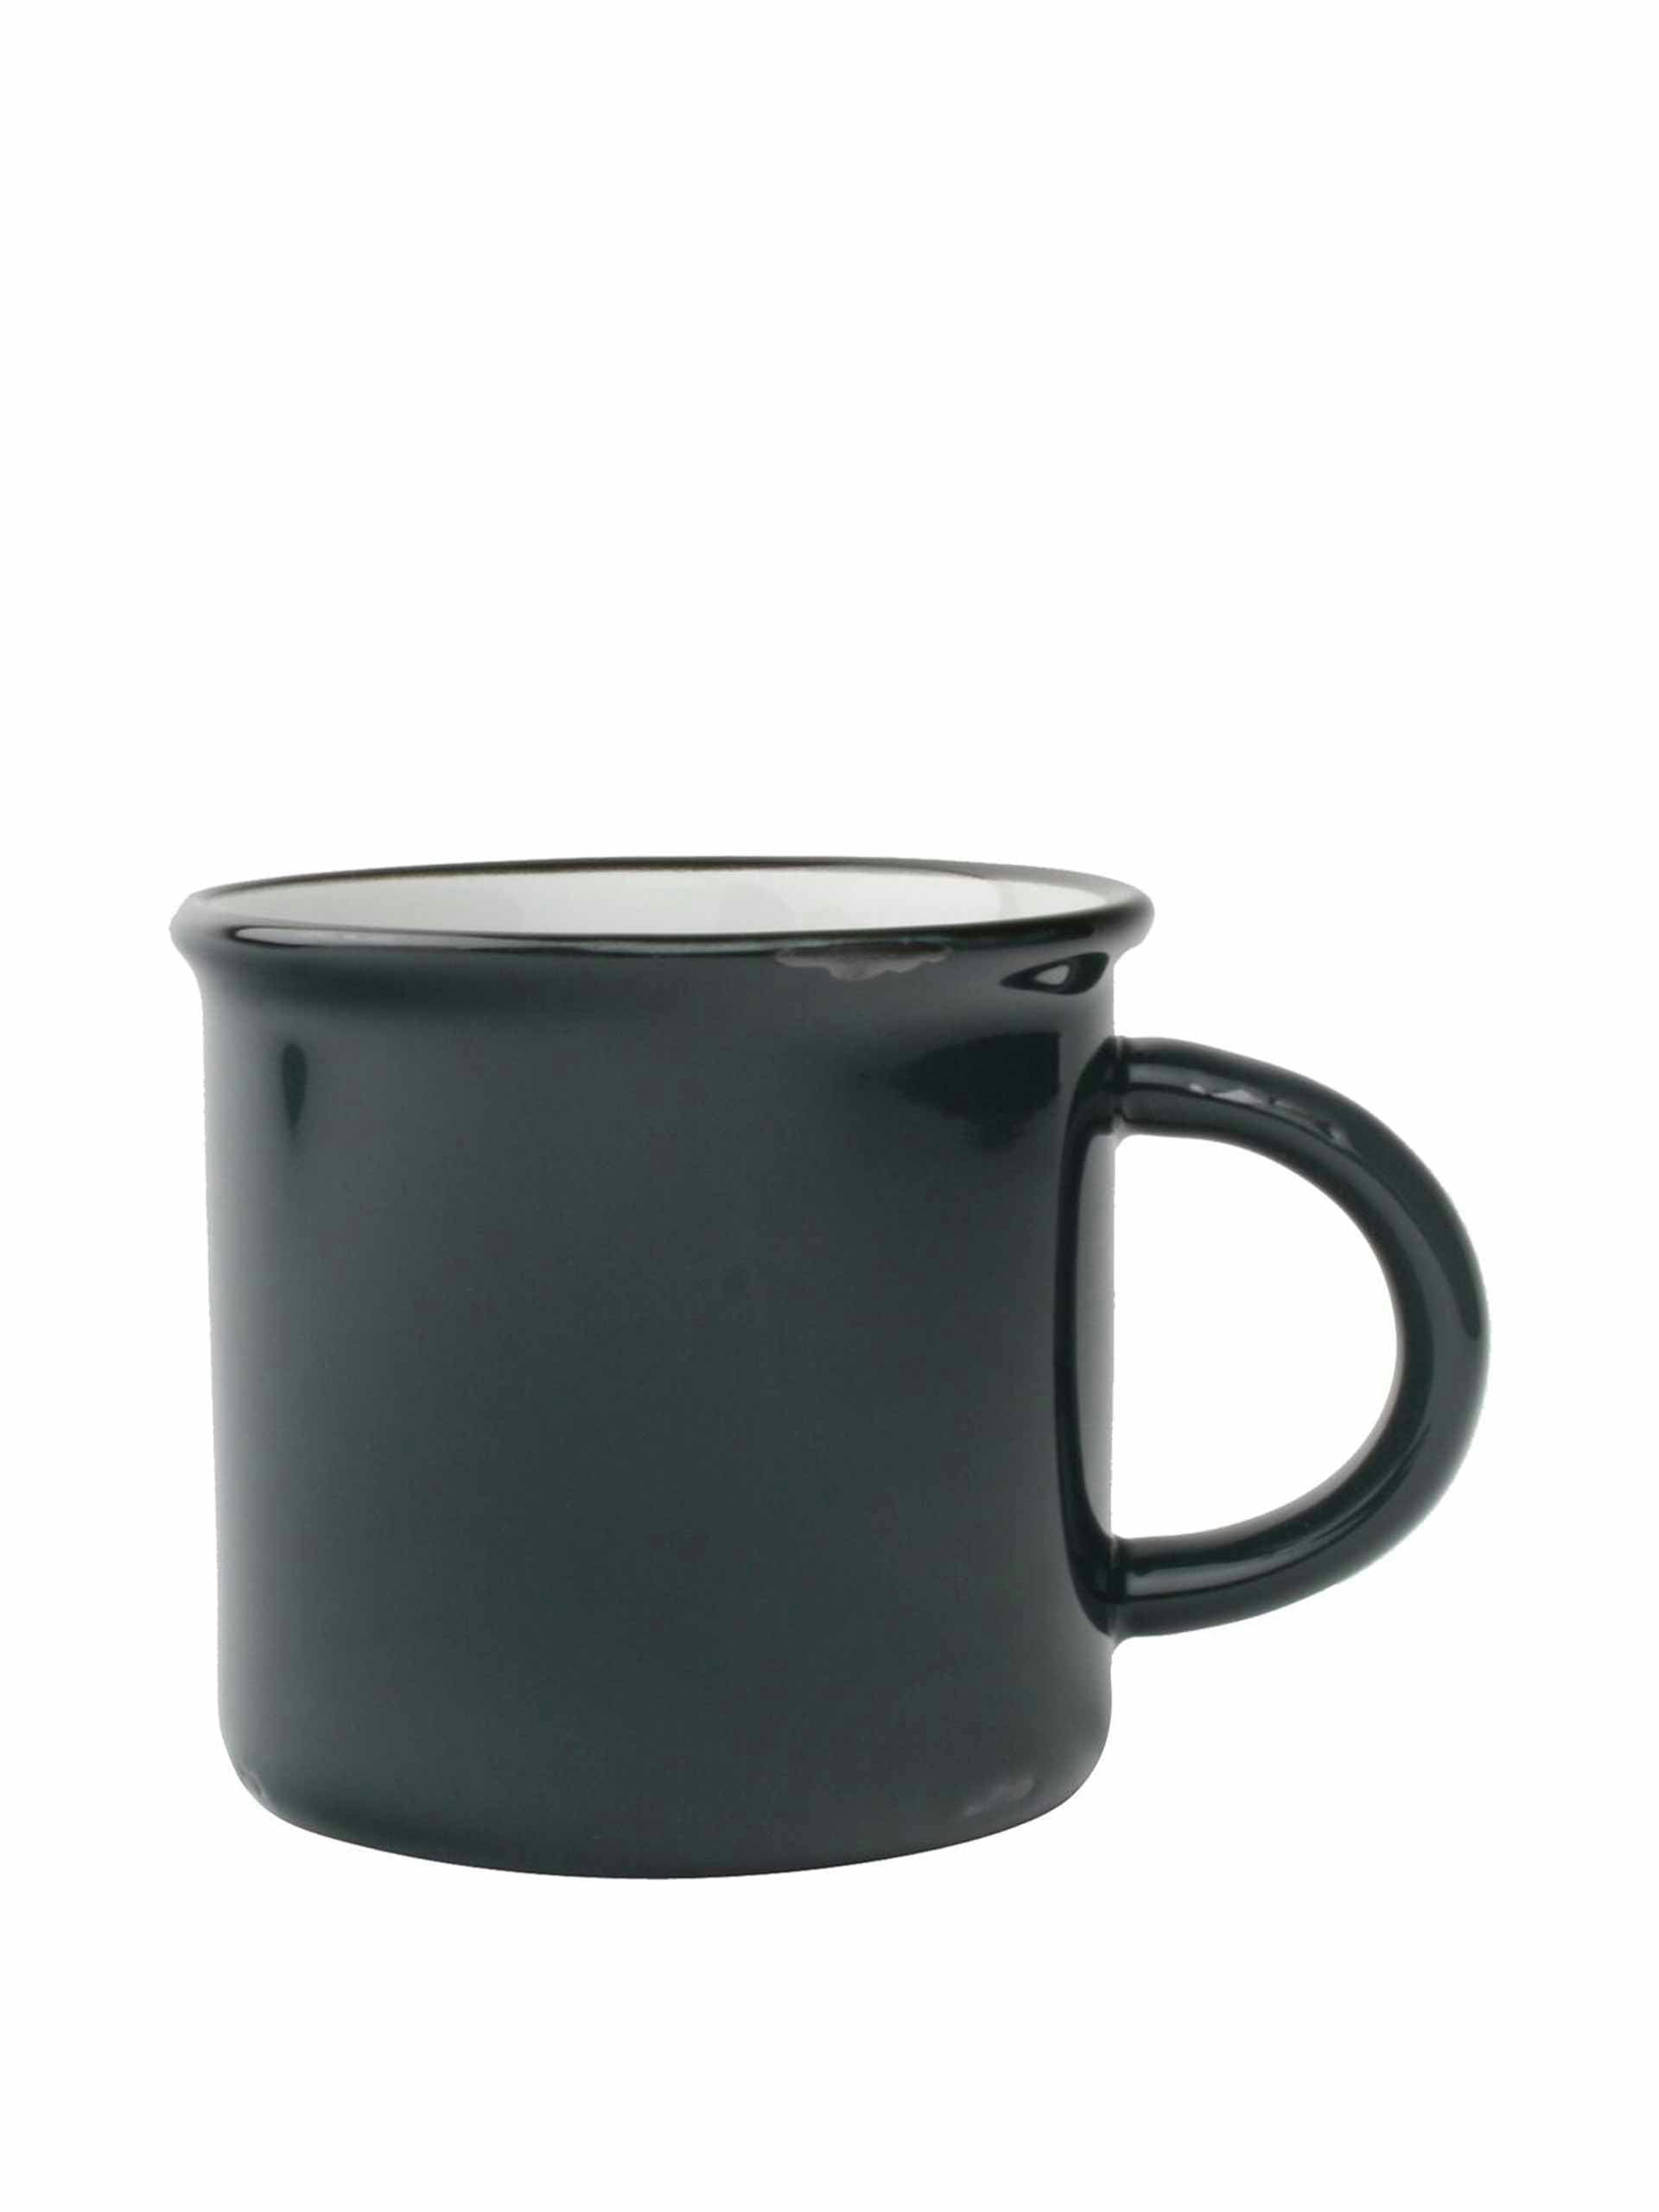 Slate grey tinware mug